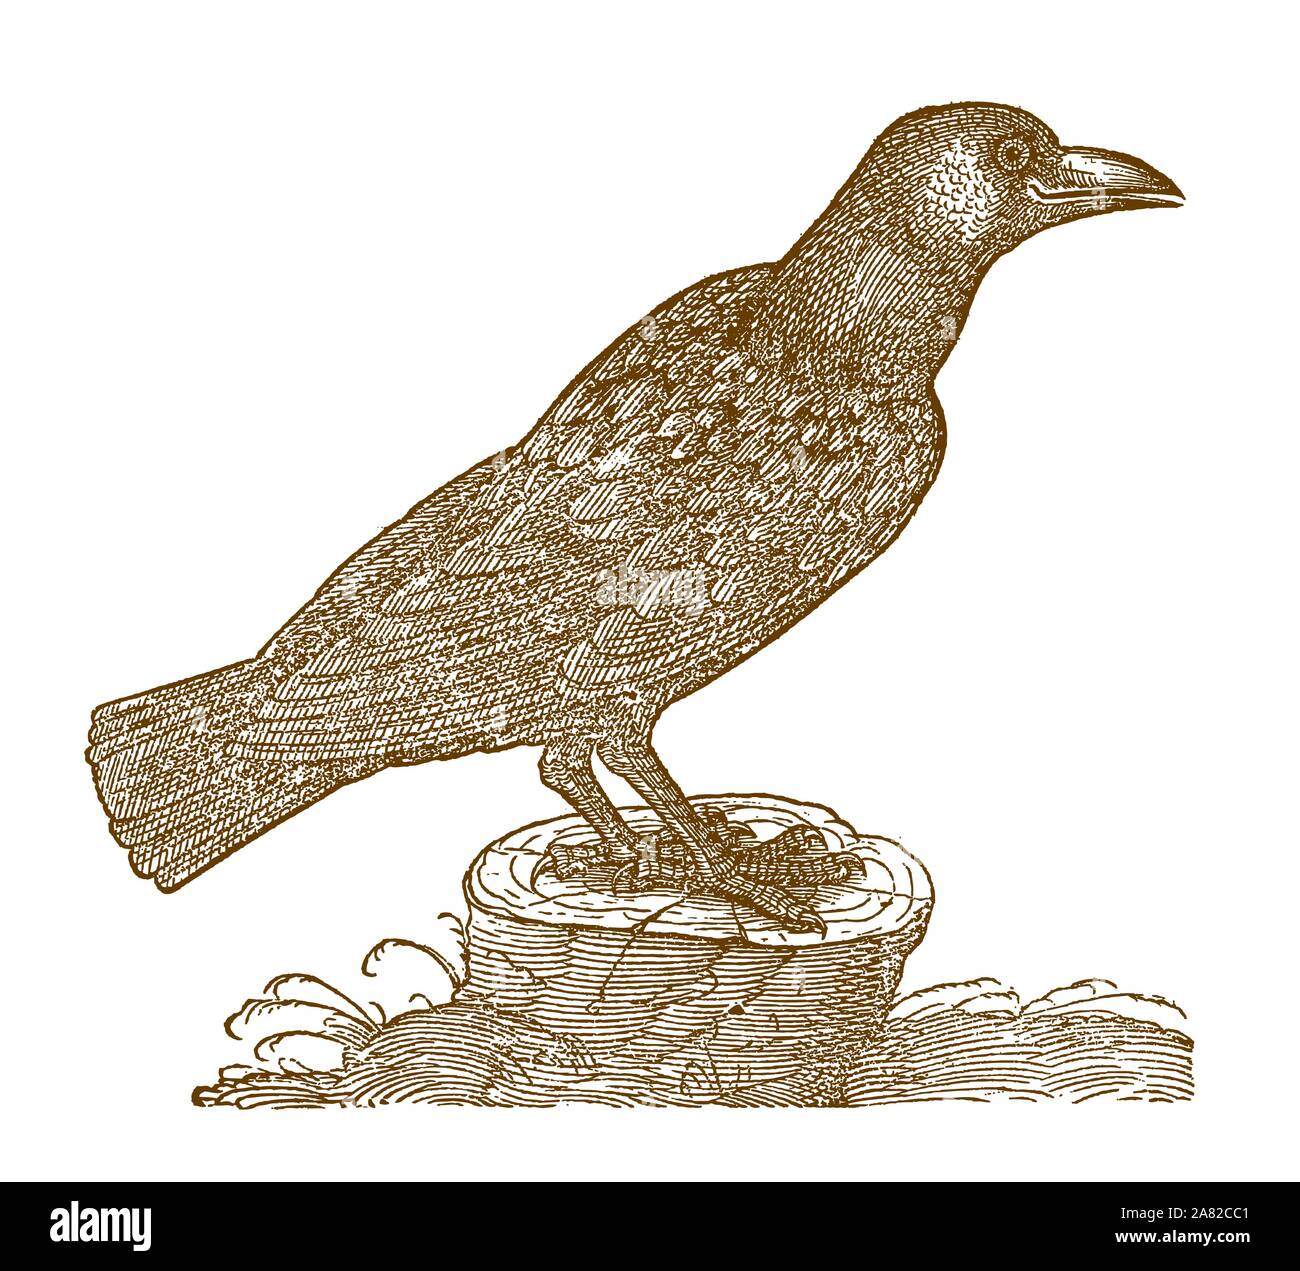 Grand corbeau (Corvus corax) assis sur une souche d'arbre. Après une gravure Illustration historique du 16e siècle Illustration de Vecteur